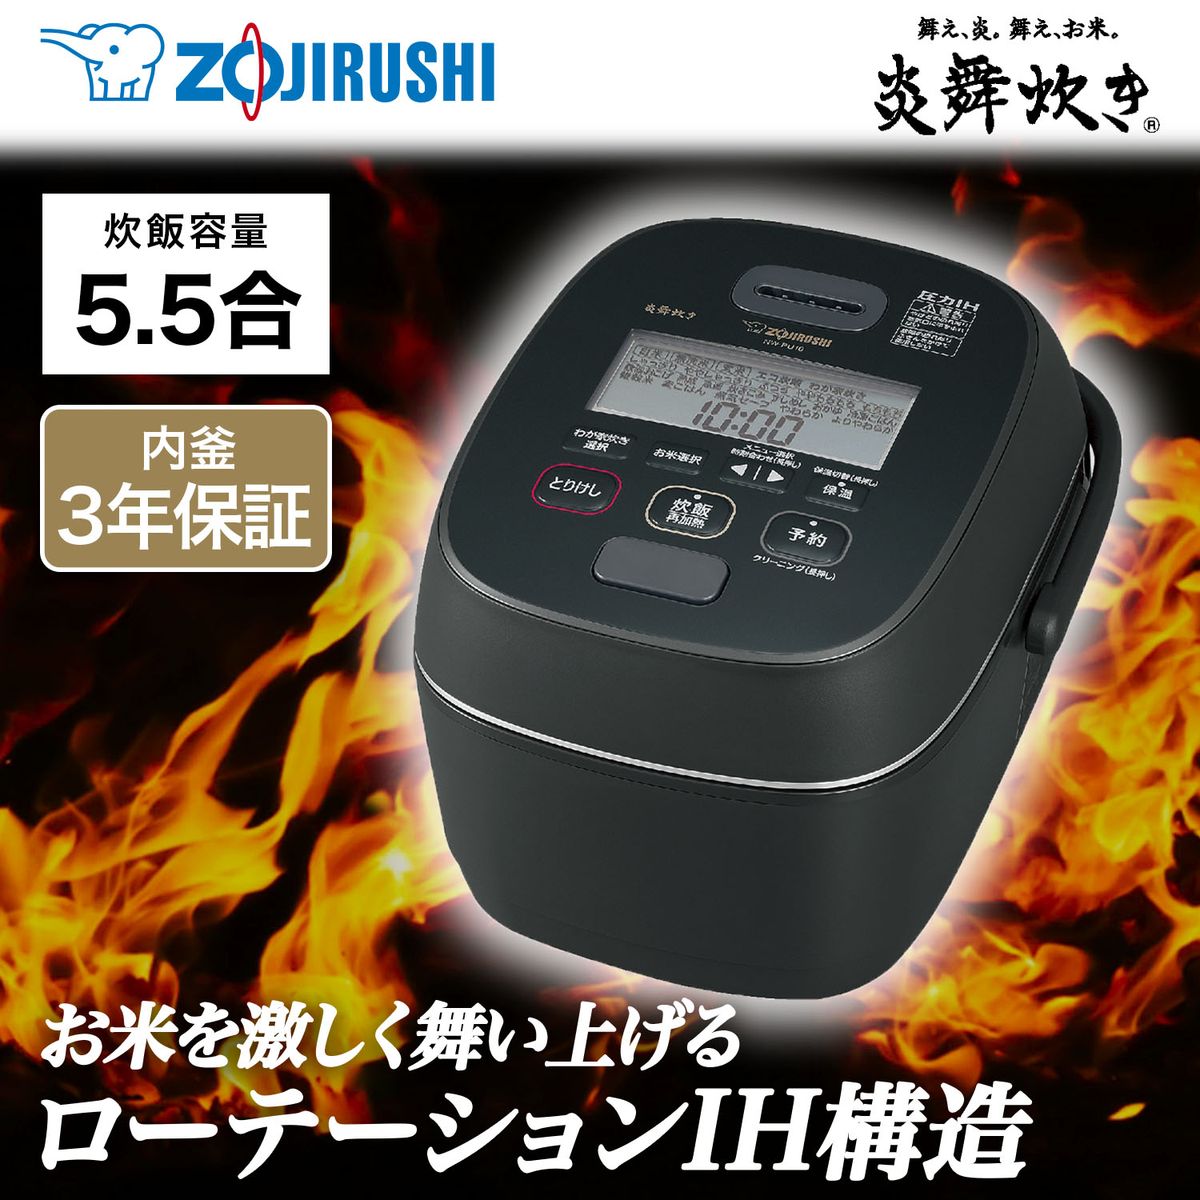 [22年度モデル 在庫限り]ZOJIRUSHI 圧力IH炊飯器 炎舞炊き 5.5合炊き ブラック